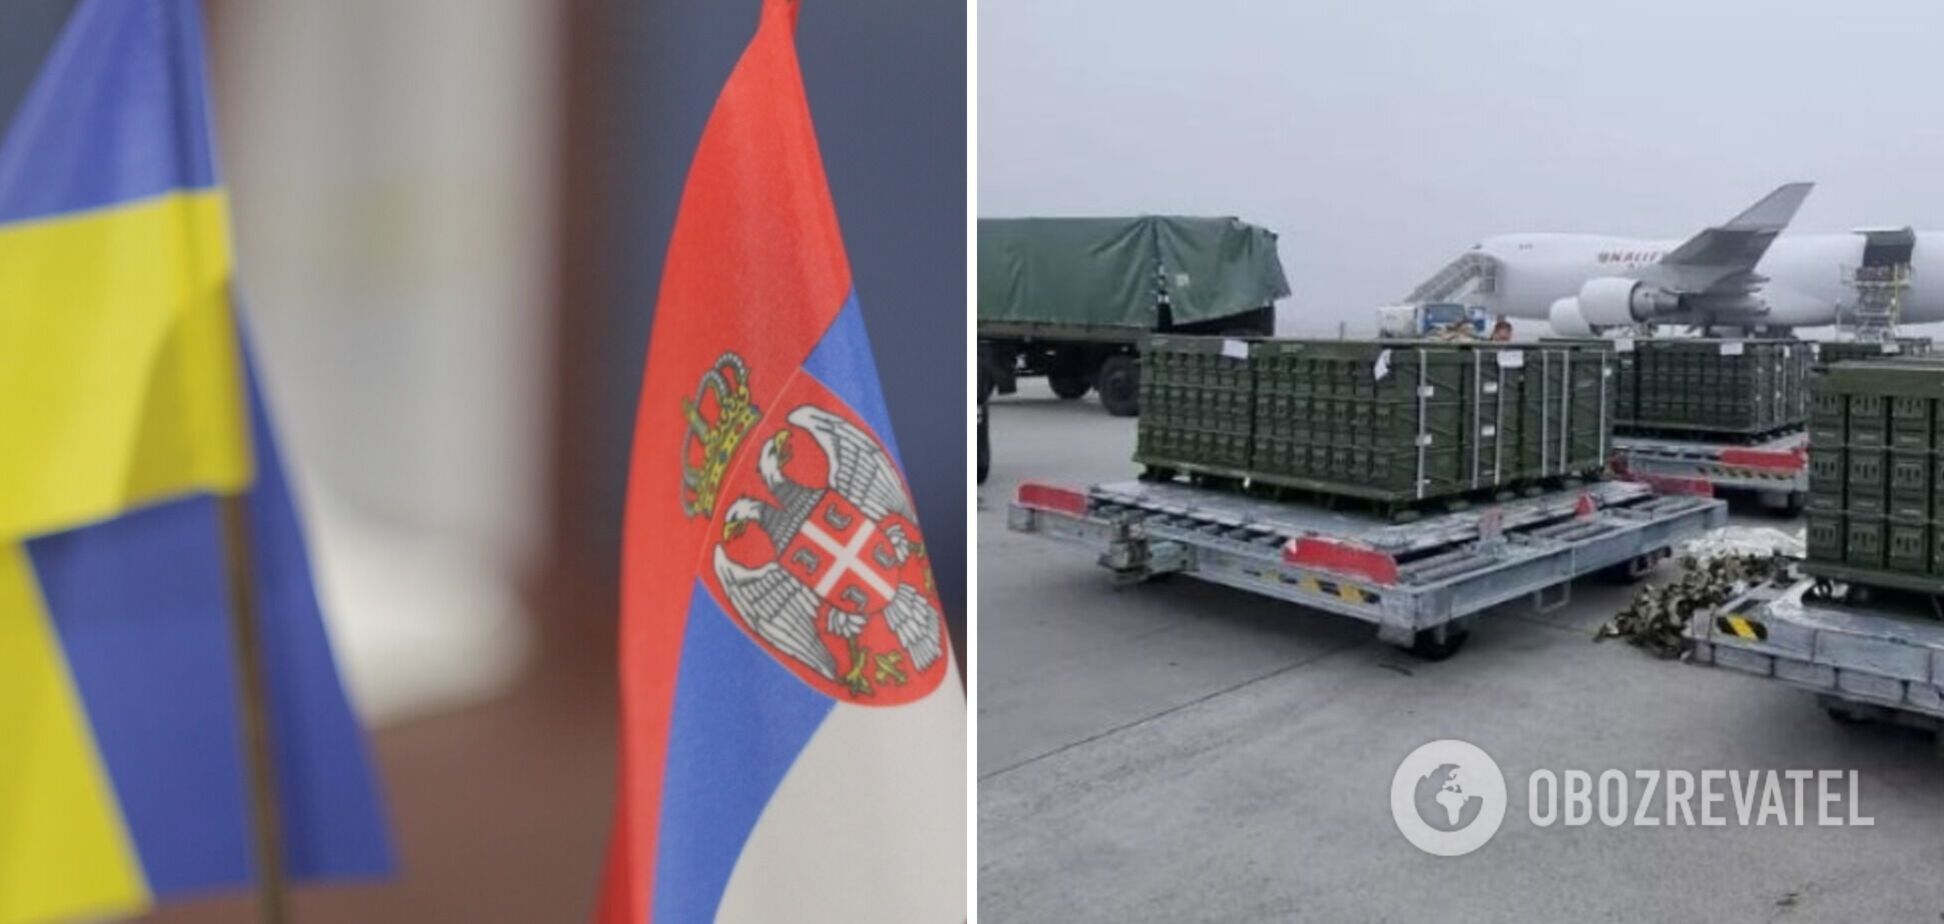 ЗМІ повідомили, що Сербія погодилася відправити Україні озброєння: в Белграді відреагували 